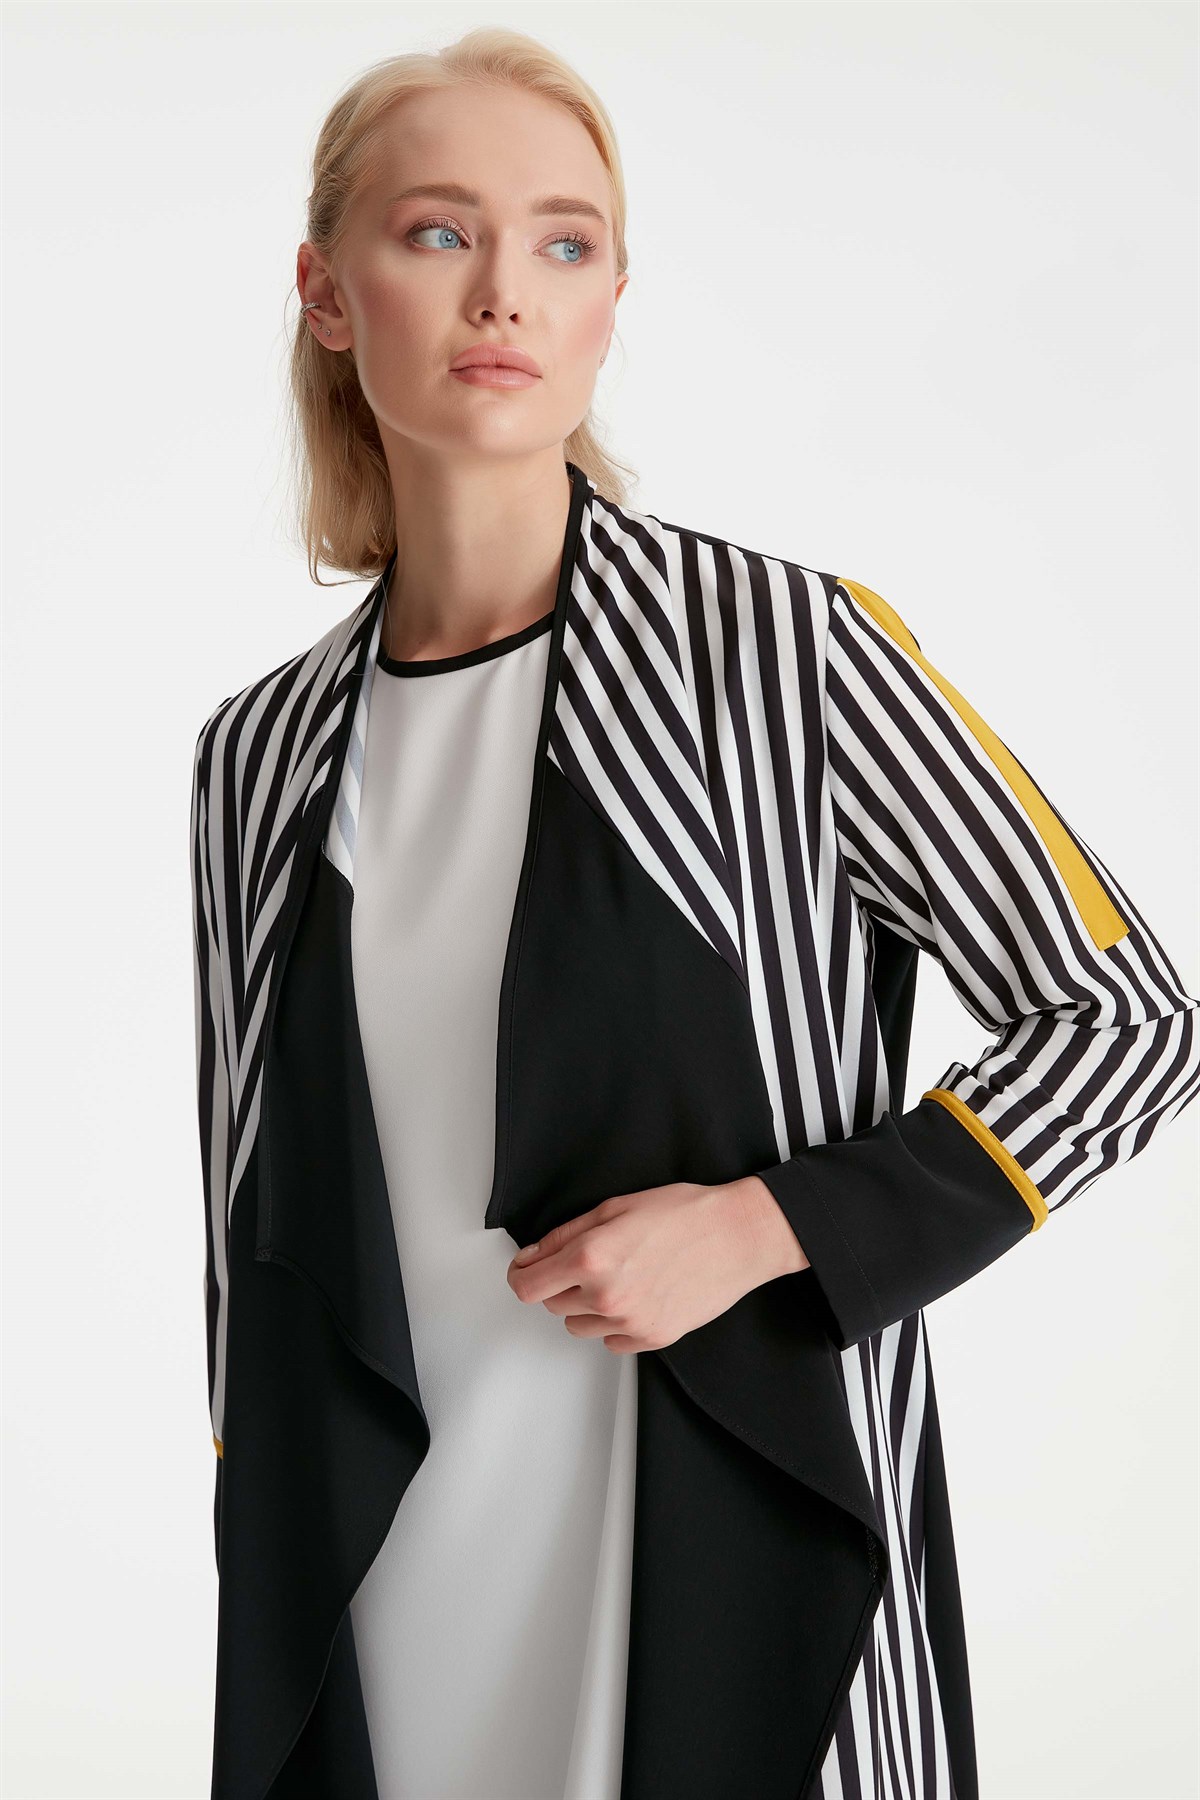 Mendil Yaka Yırtmaç Detaylı Çizgili Ceket Kolsuz Bluz Takım - Siyah